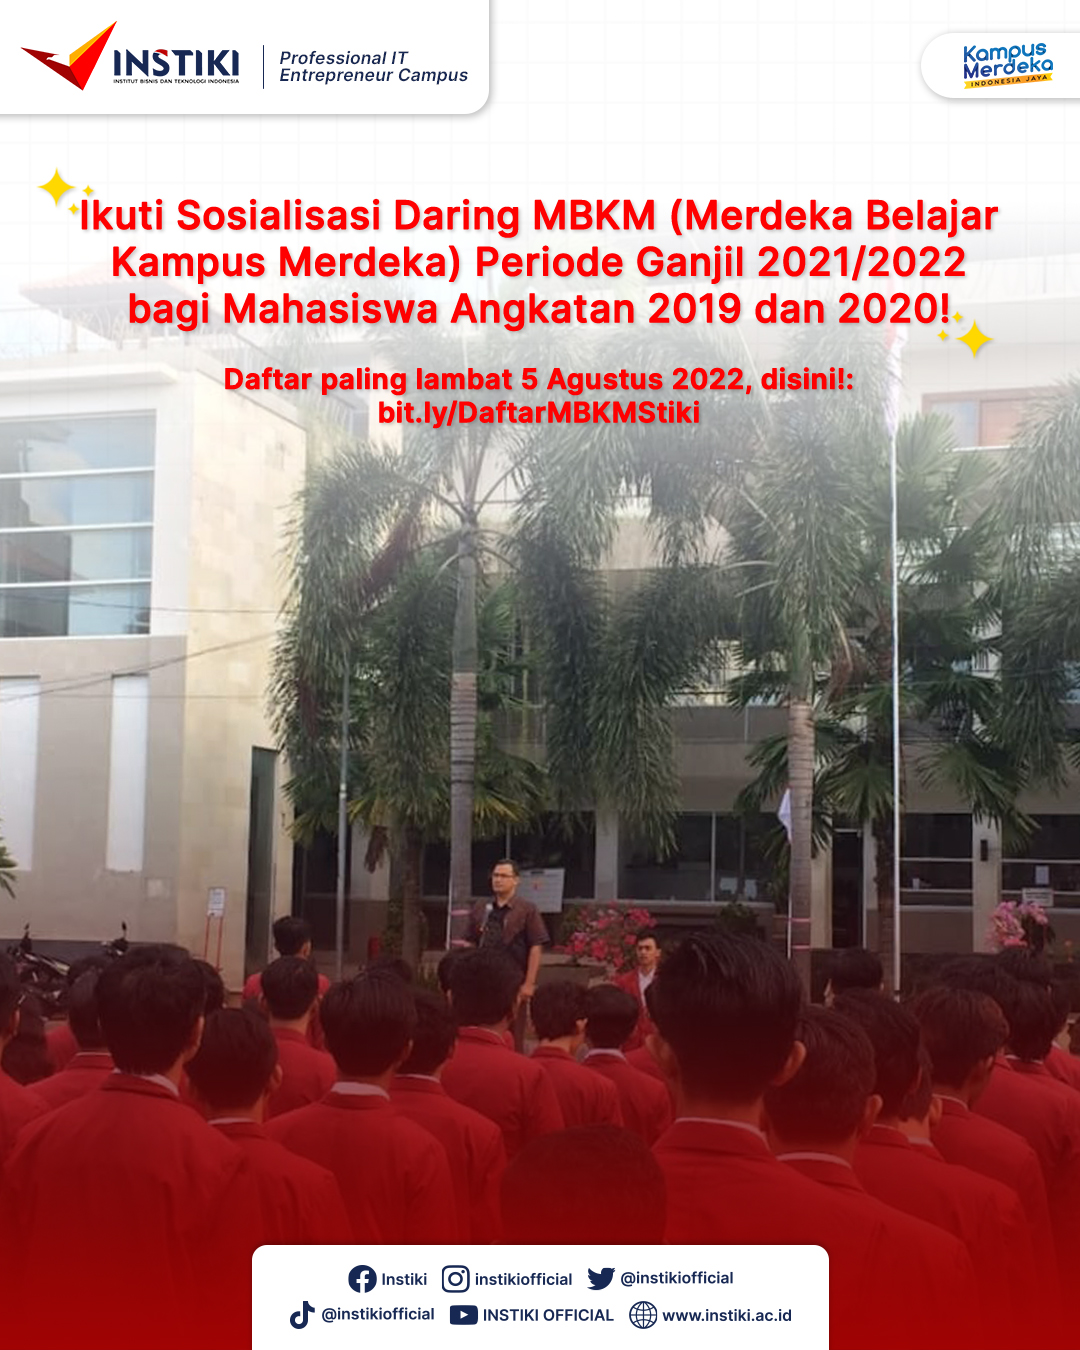 Sosialisasi MBKM Periode Ganjil 2021/2022 bagi Mahasiswa Angkatan 2019 dan 2020